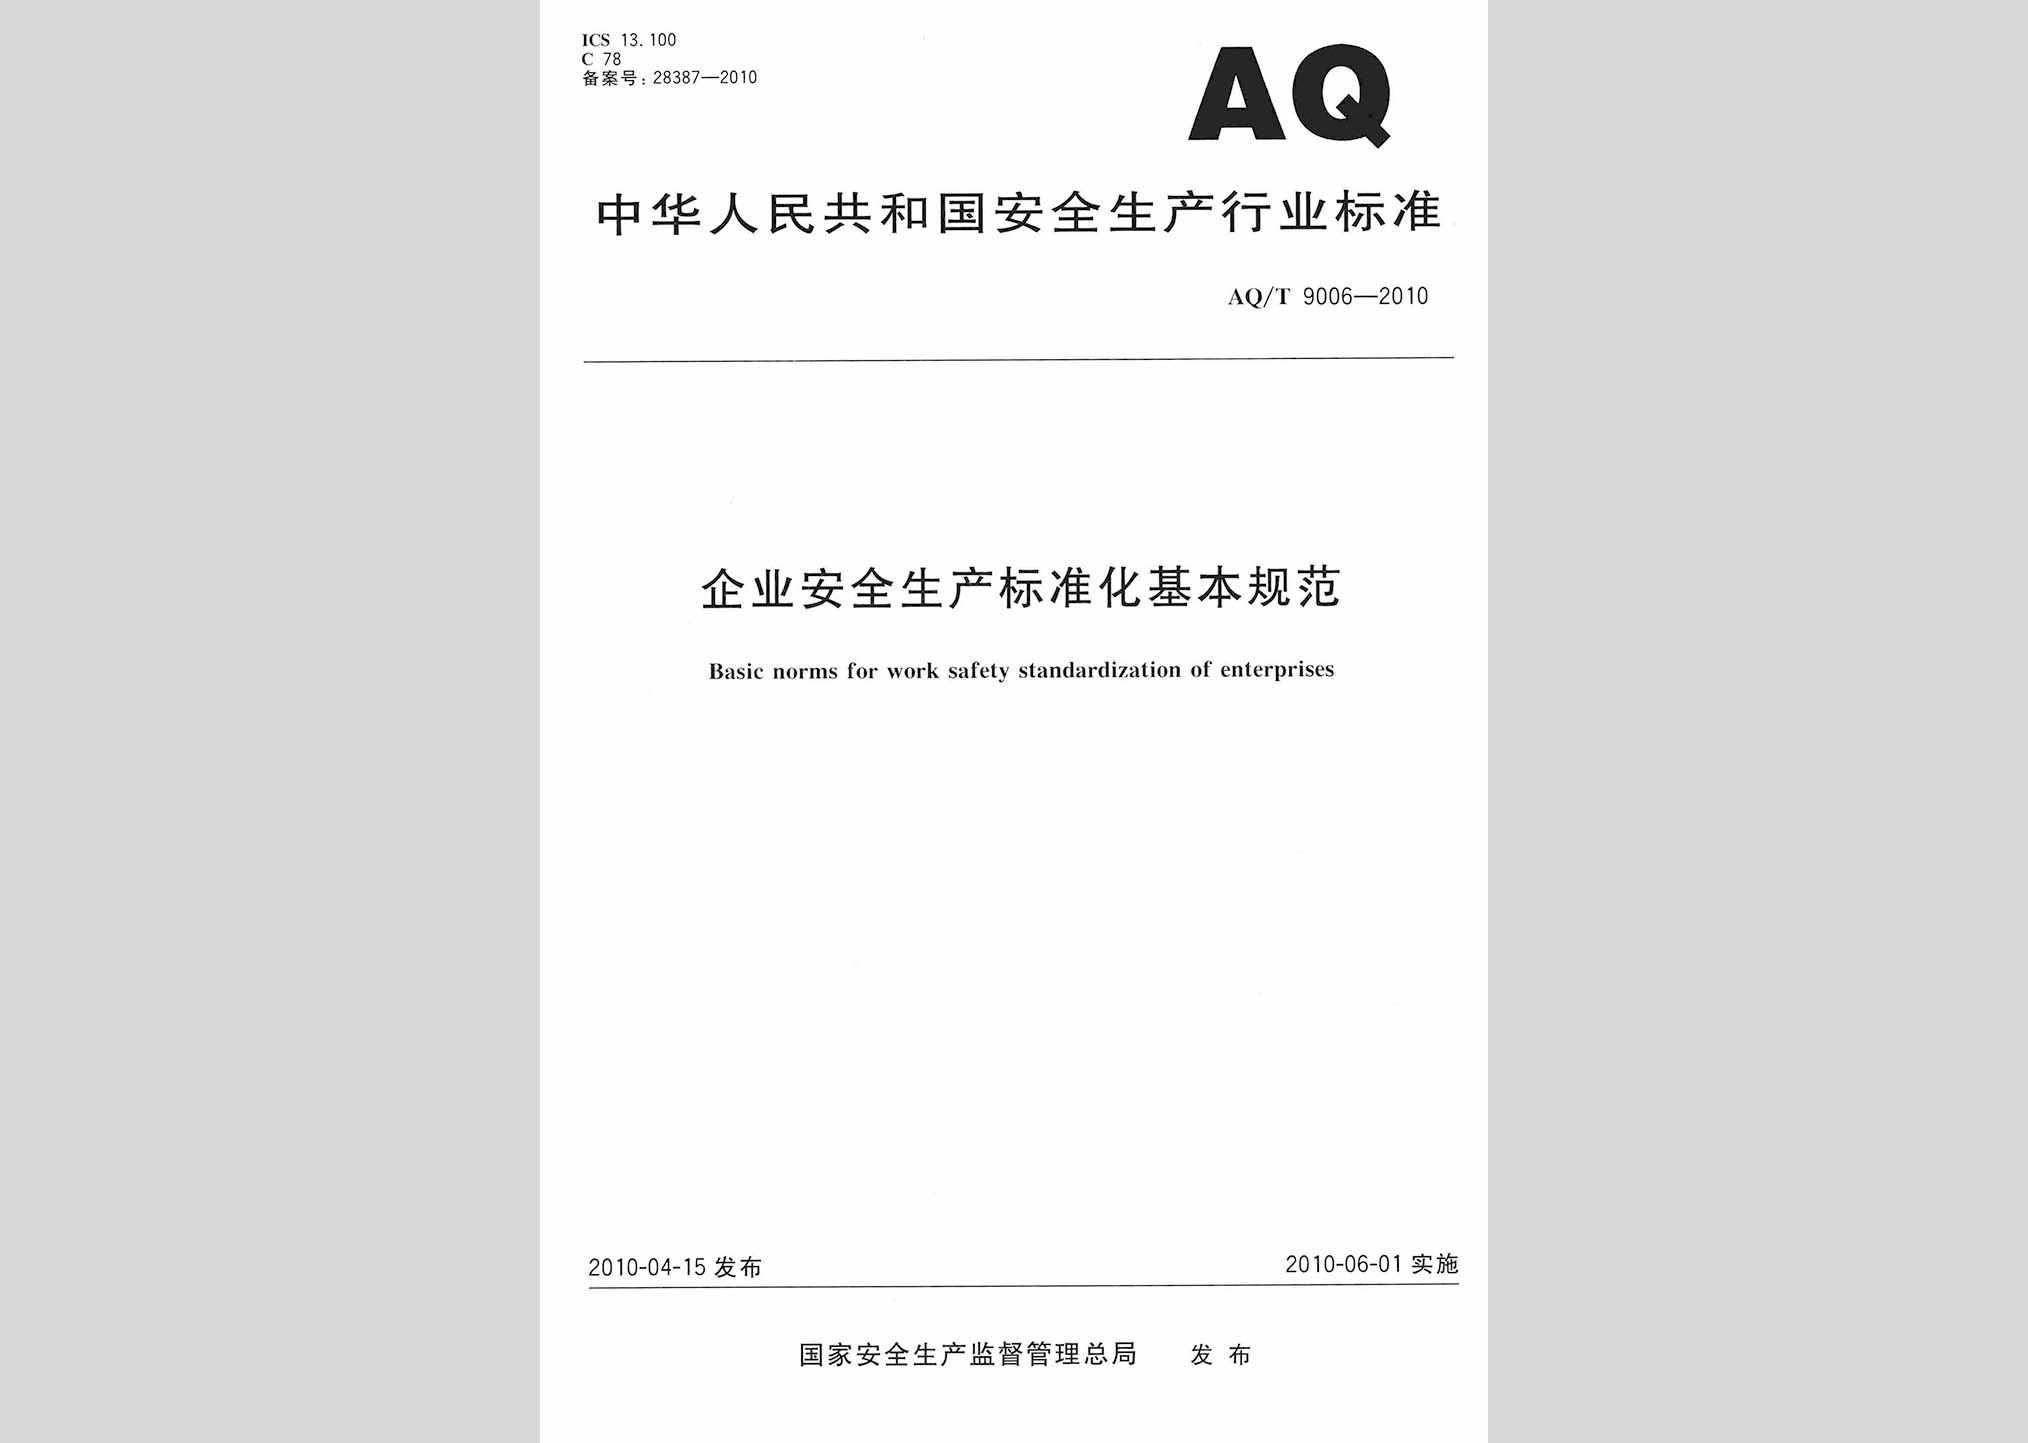 AQ/T9006-2010：企业安全生产标准化基本规范